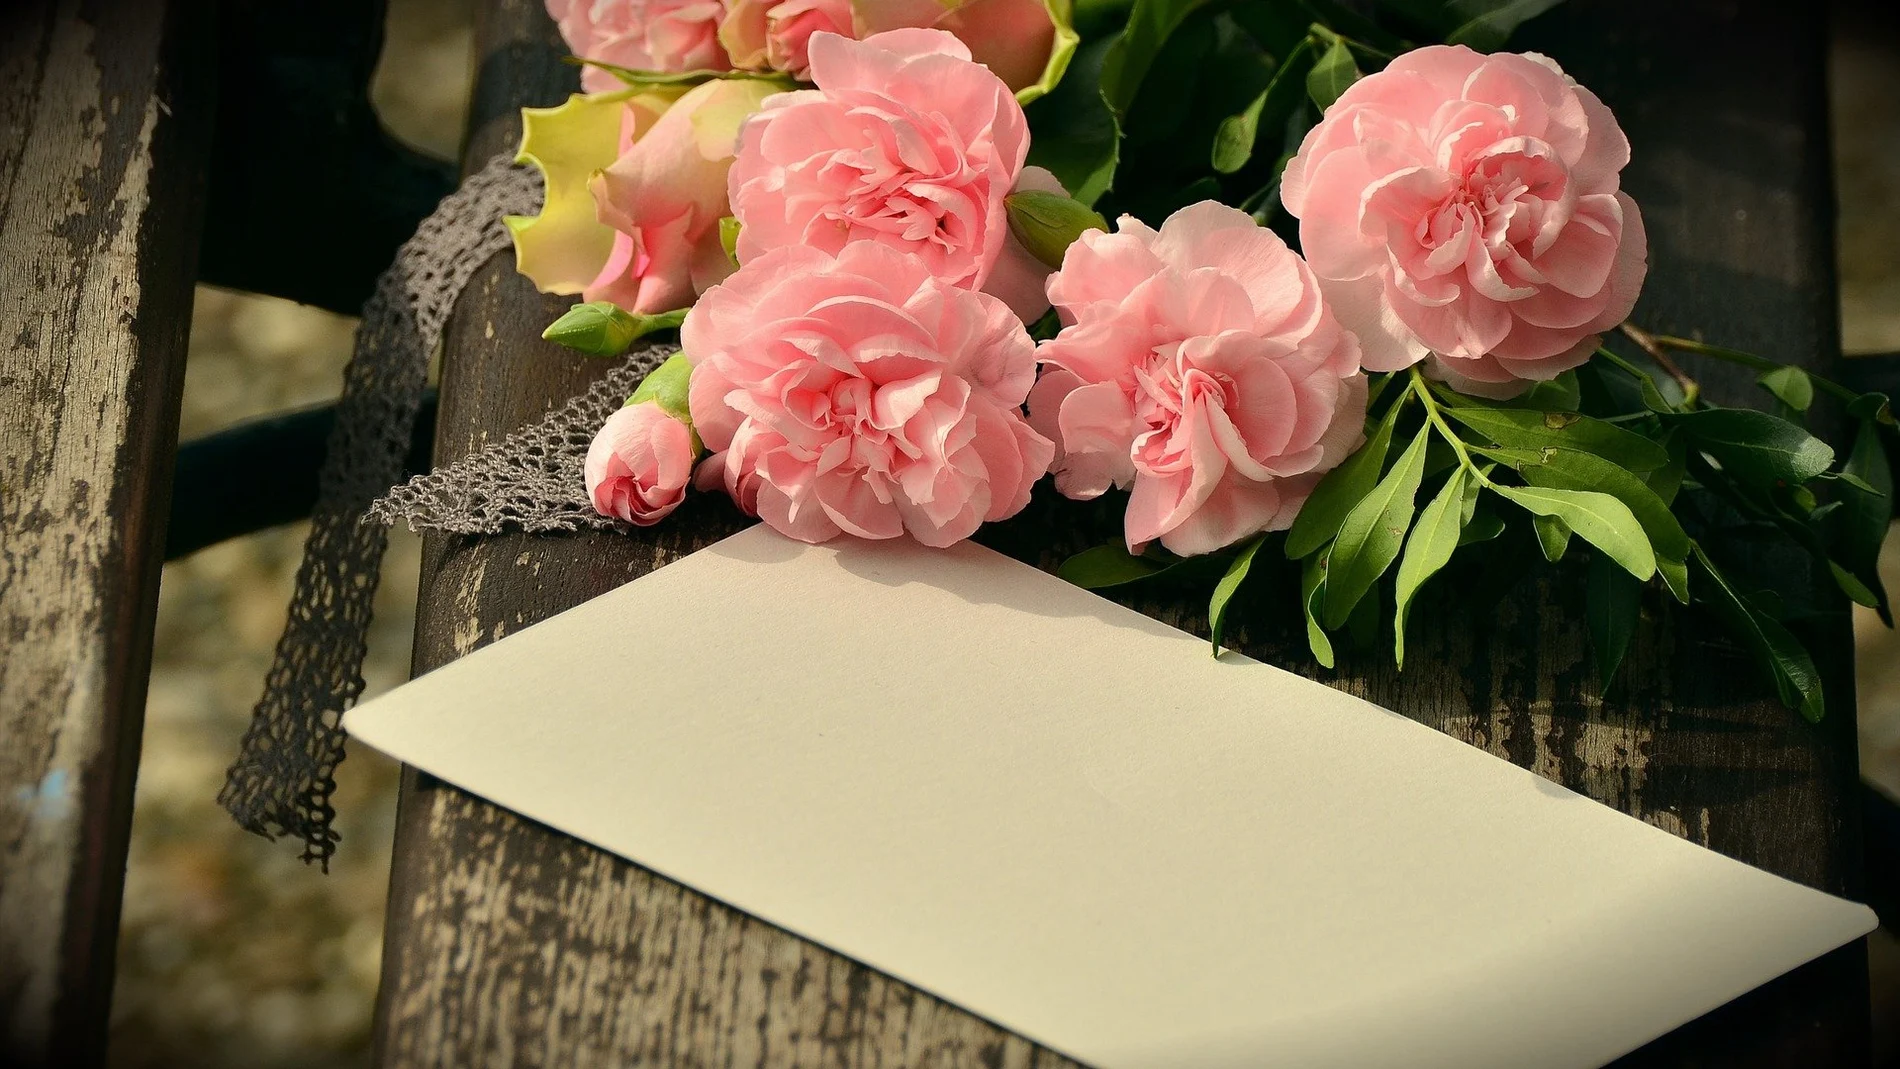 9 ideas de regalos para el Día de la Madre a domicilio: Enviar flores,  desayunos y